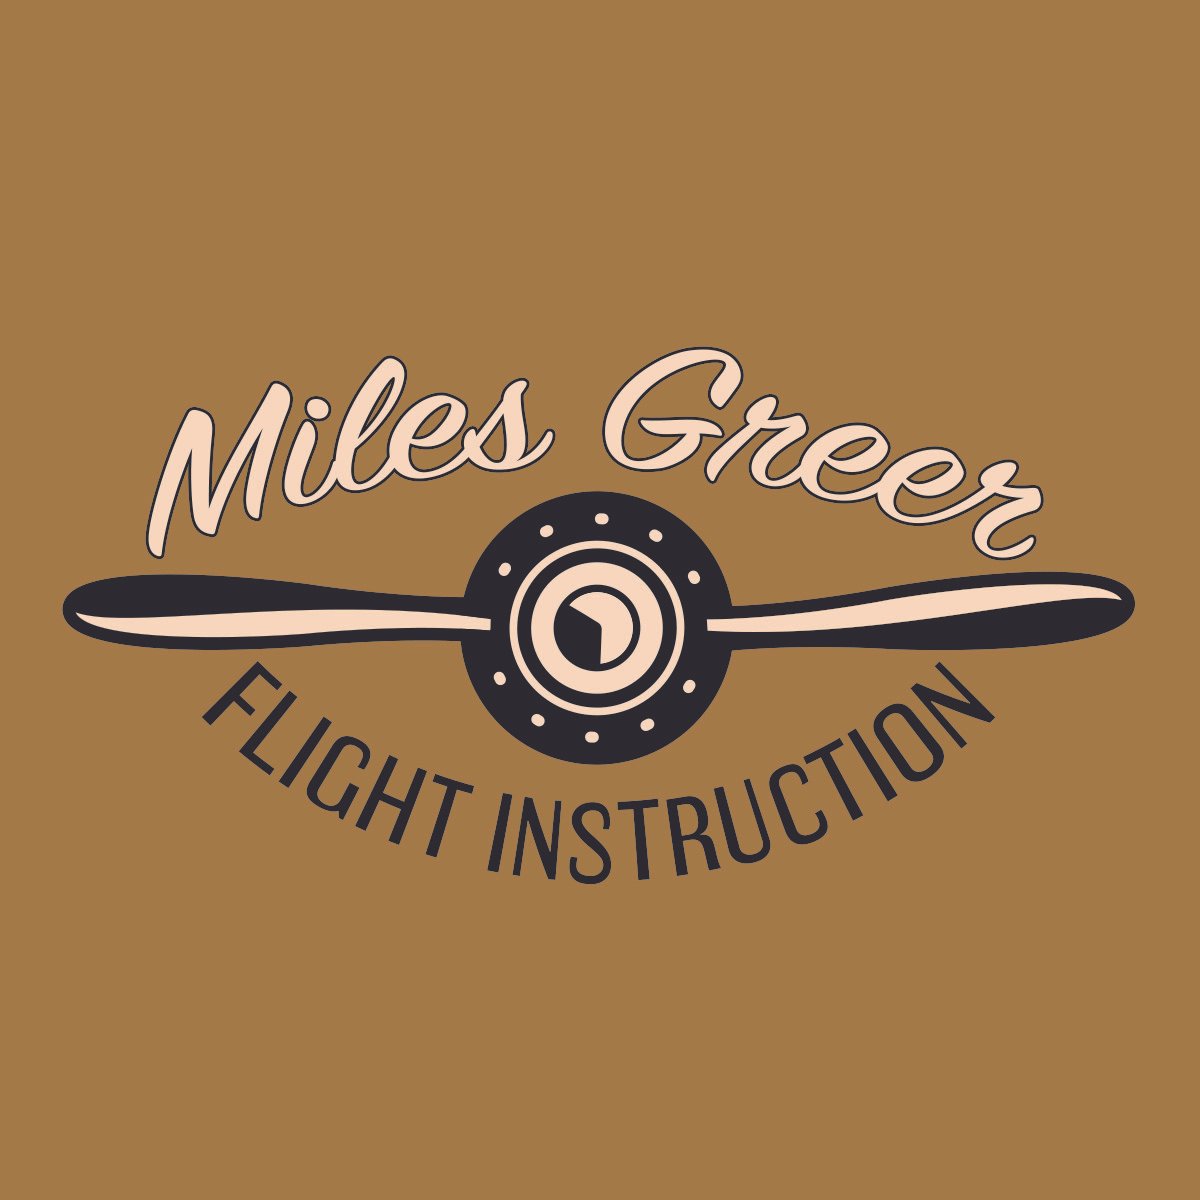 Miles Greer Flight Instruction